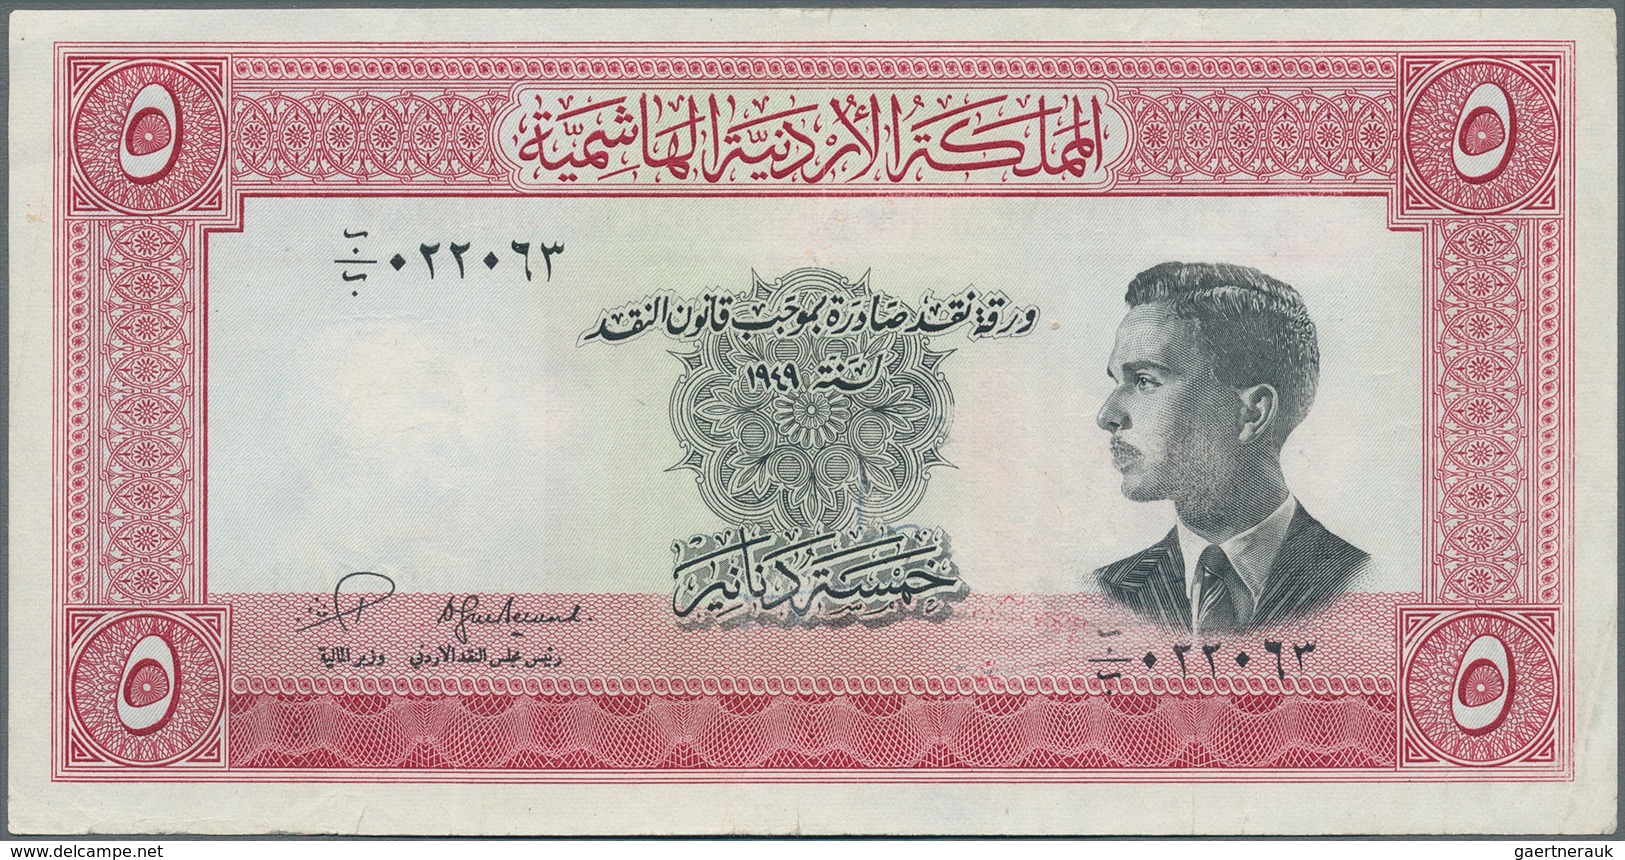 Jordan / Jordanien: 5 Dinars L.1949 (1952), P.7, Still Crisp Paper And Bright Colors With A Few Fold - Jordan